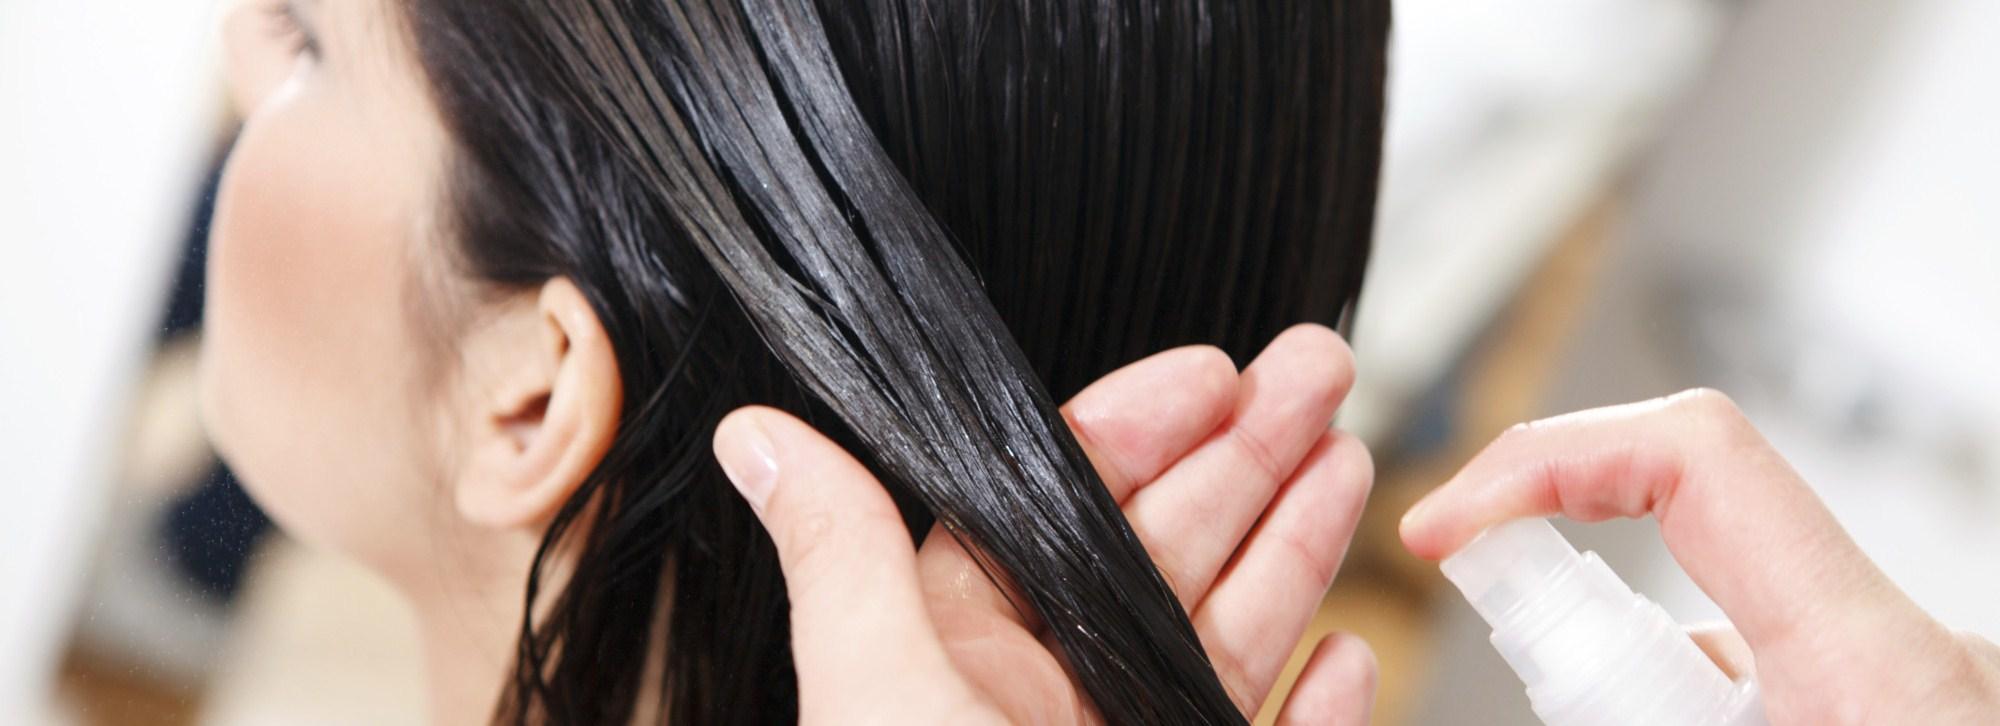 5 салонных процедур, которые могут навредить волосам